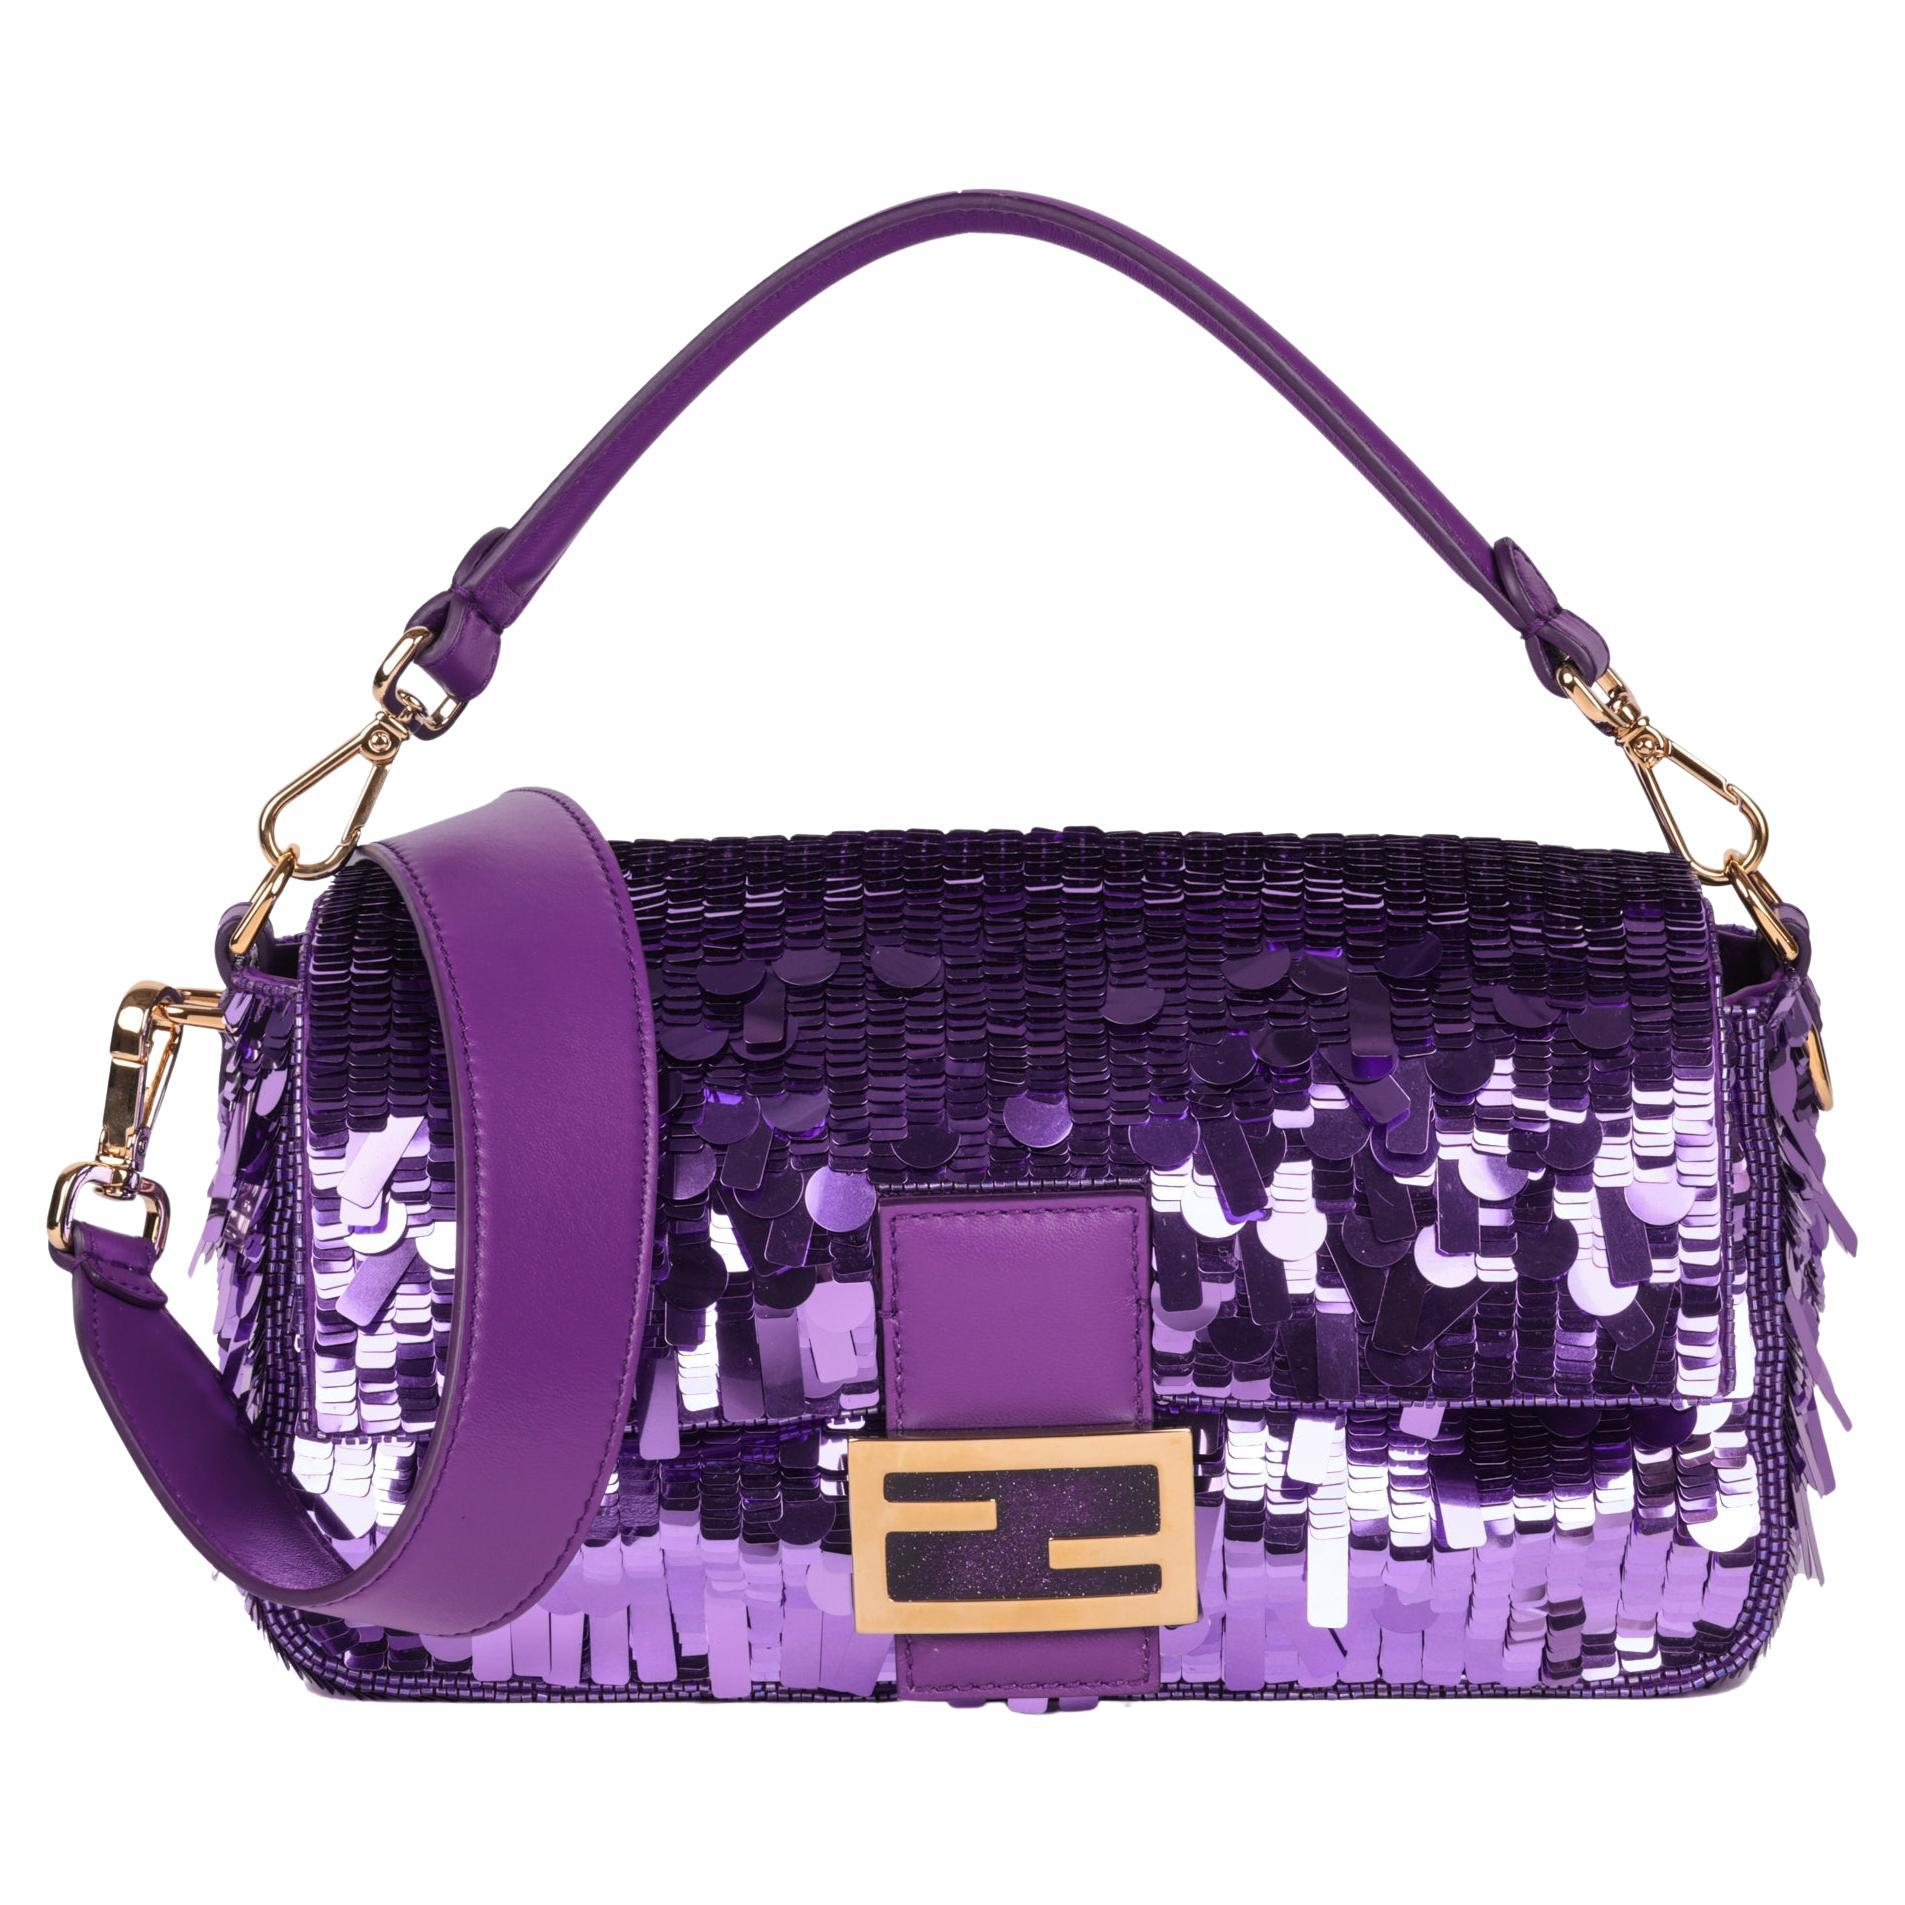 Fendi baguette purple sequin bag  Sequin bag, Bags, Fendi baguette